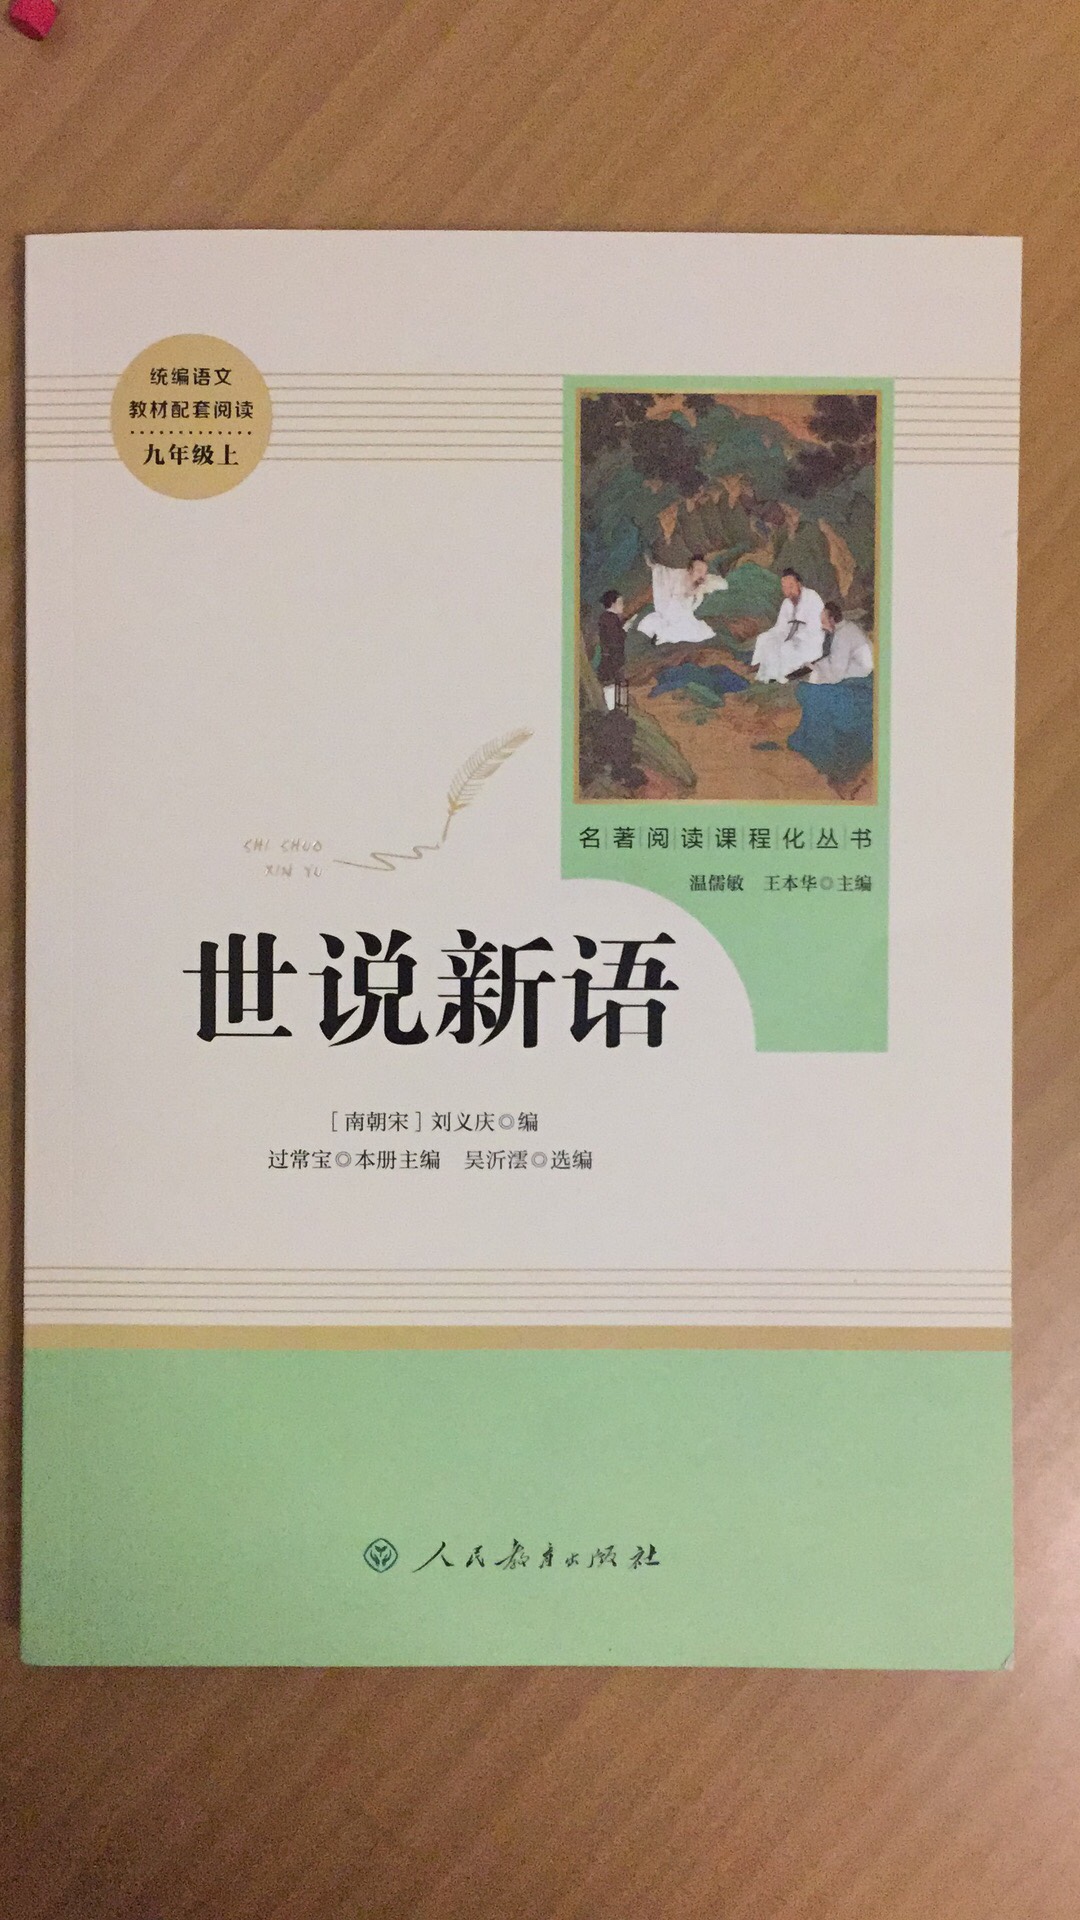 儿子点名要的好书，就在买了，物流快，拆开新?，就爱不释手，饥渴的品读，中华文化就在深深地扎根心田，感谢，感谢体验！